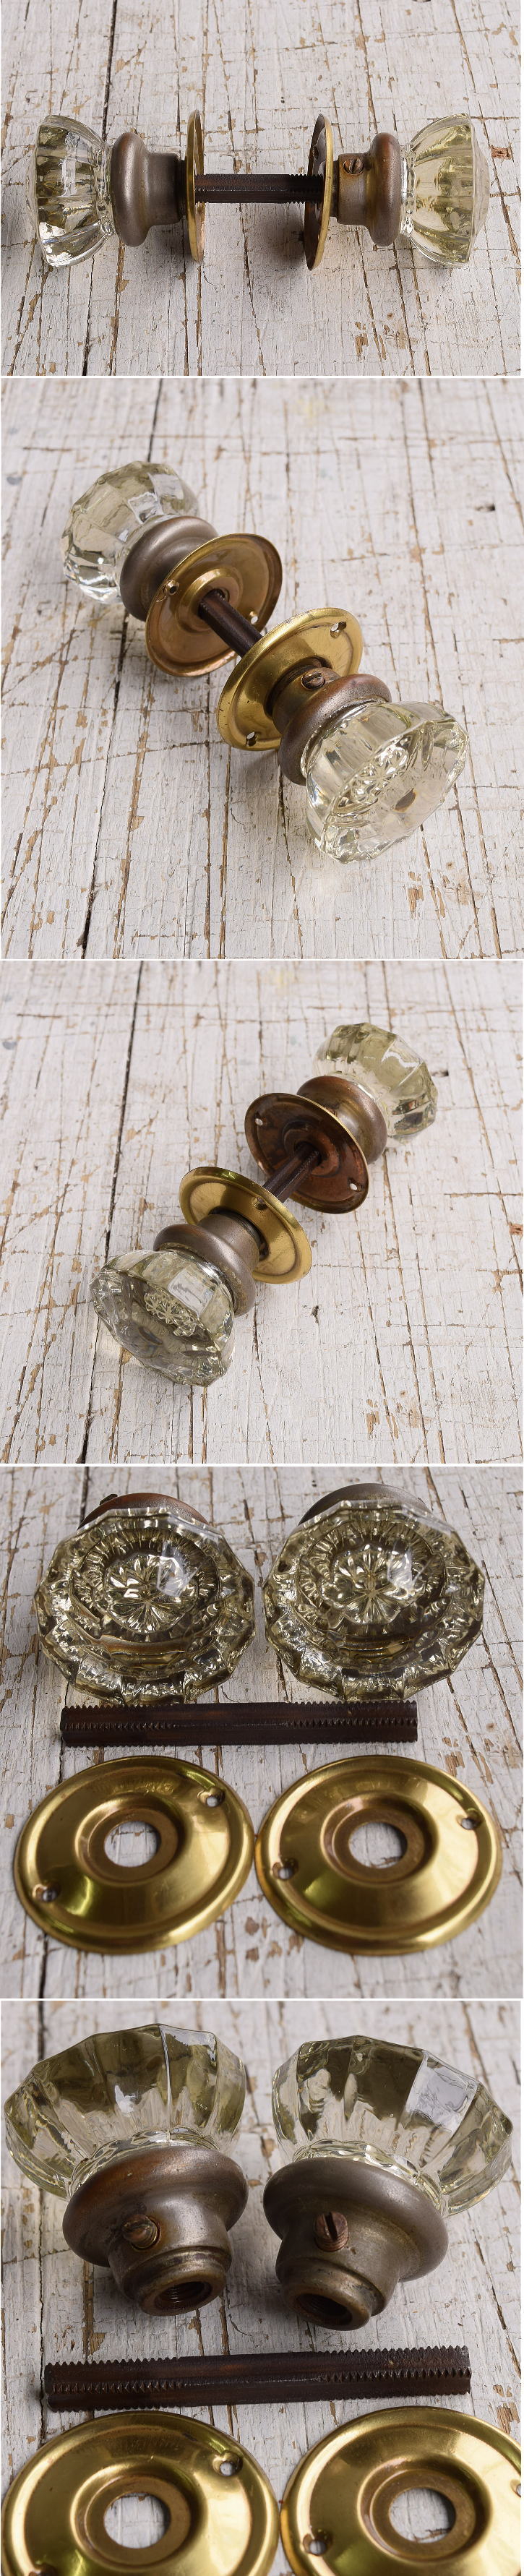 イギリス アンティーク ガラス製 ドアノブ 建具金物 握り玉 11809